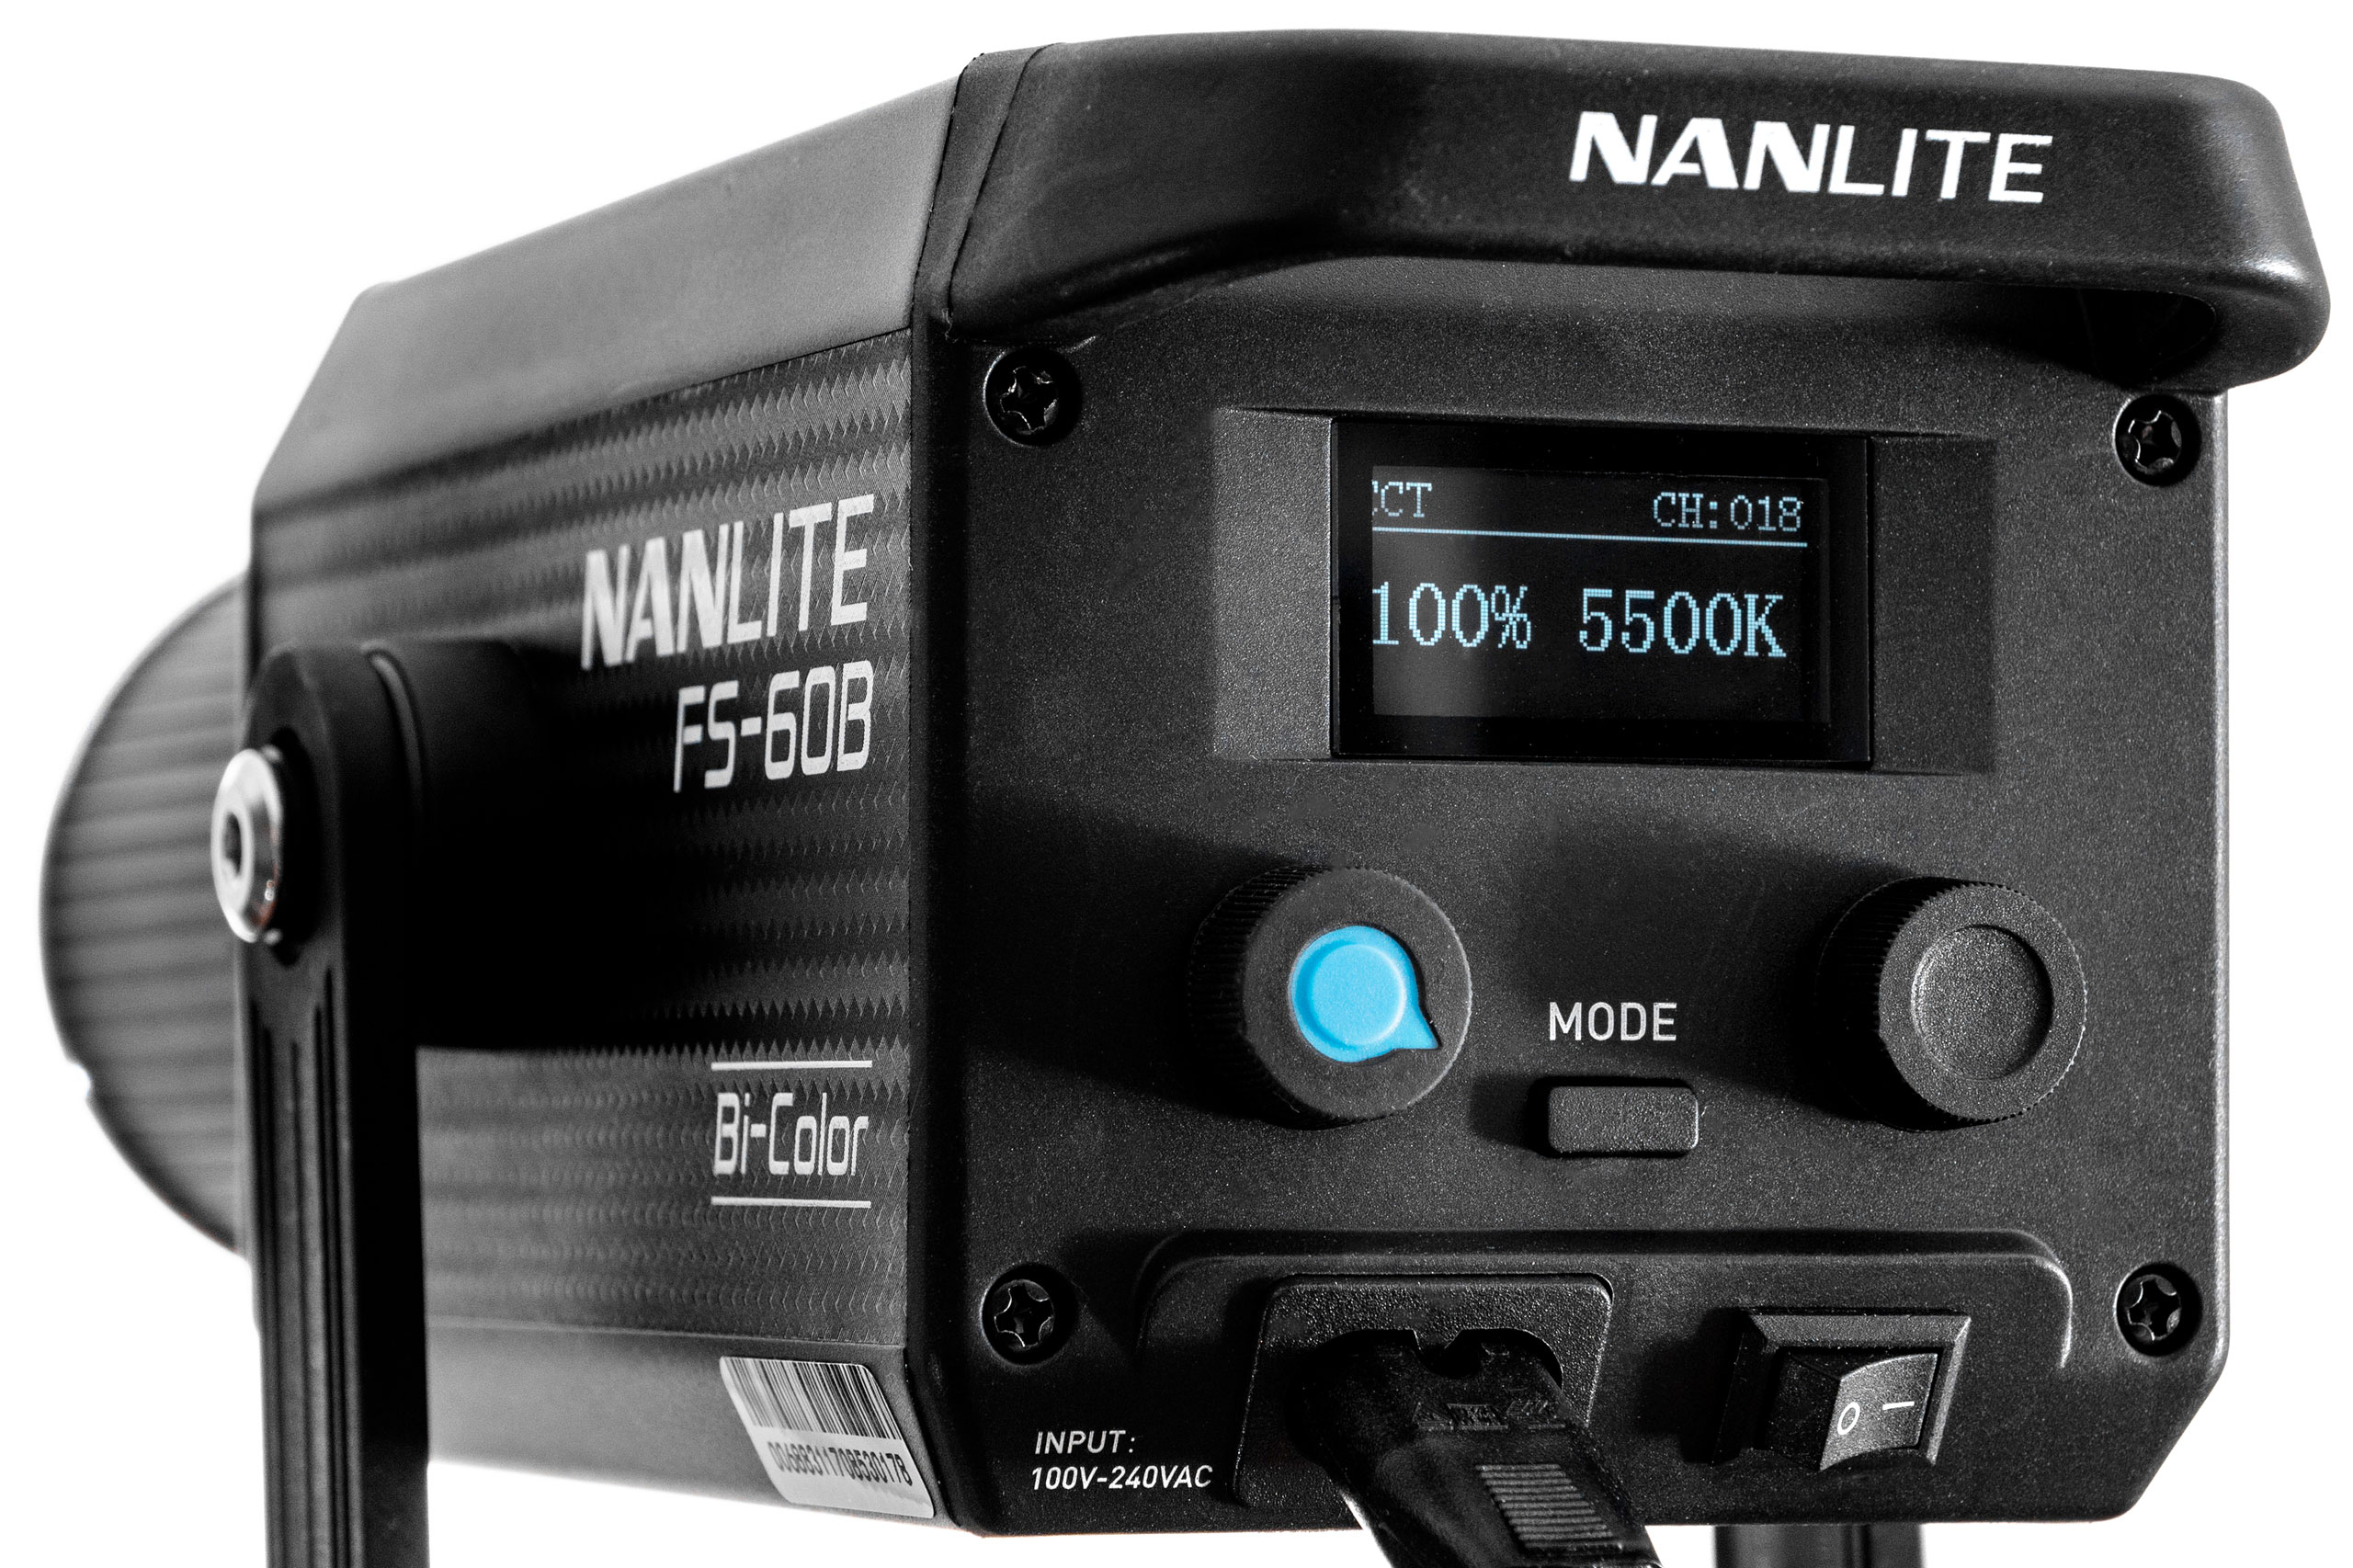 Nanlite FS-60B controls